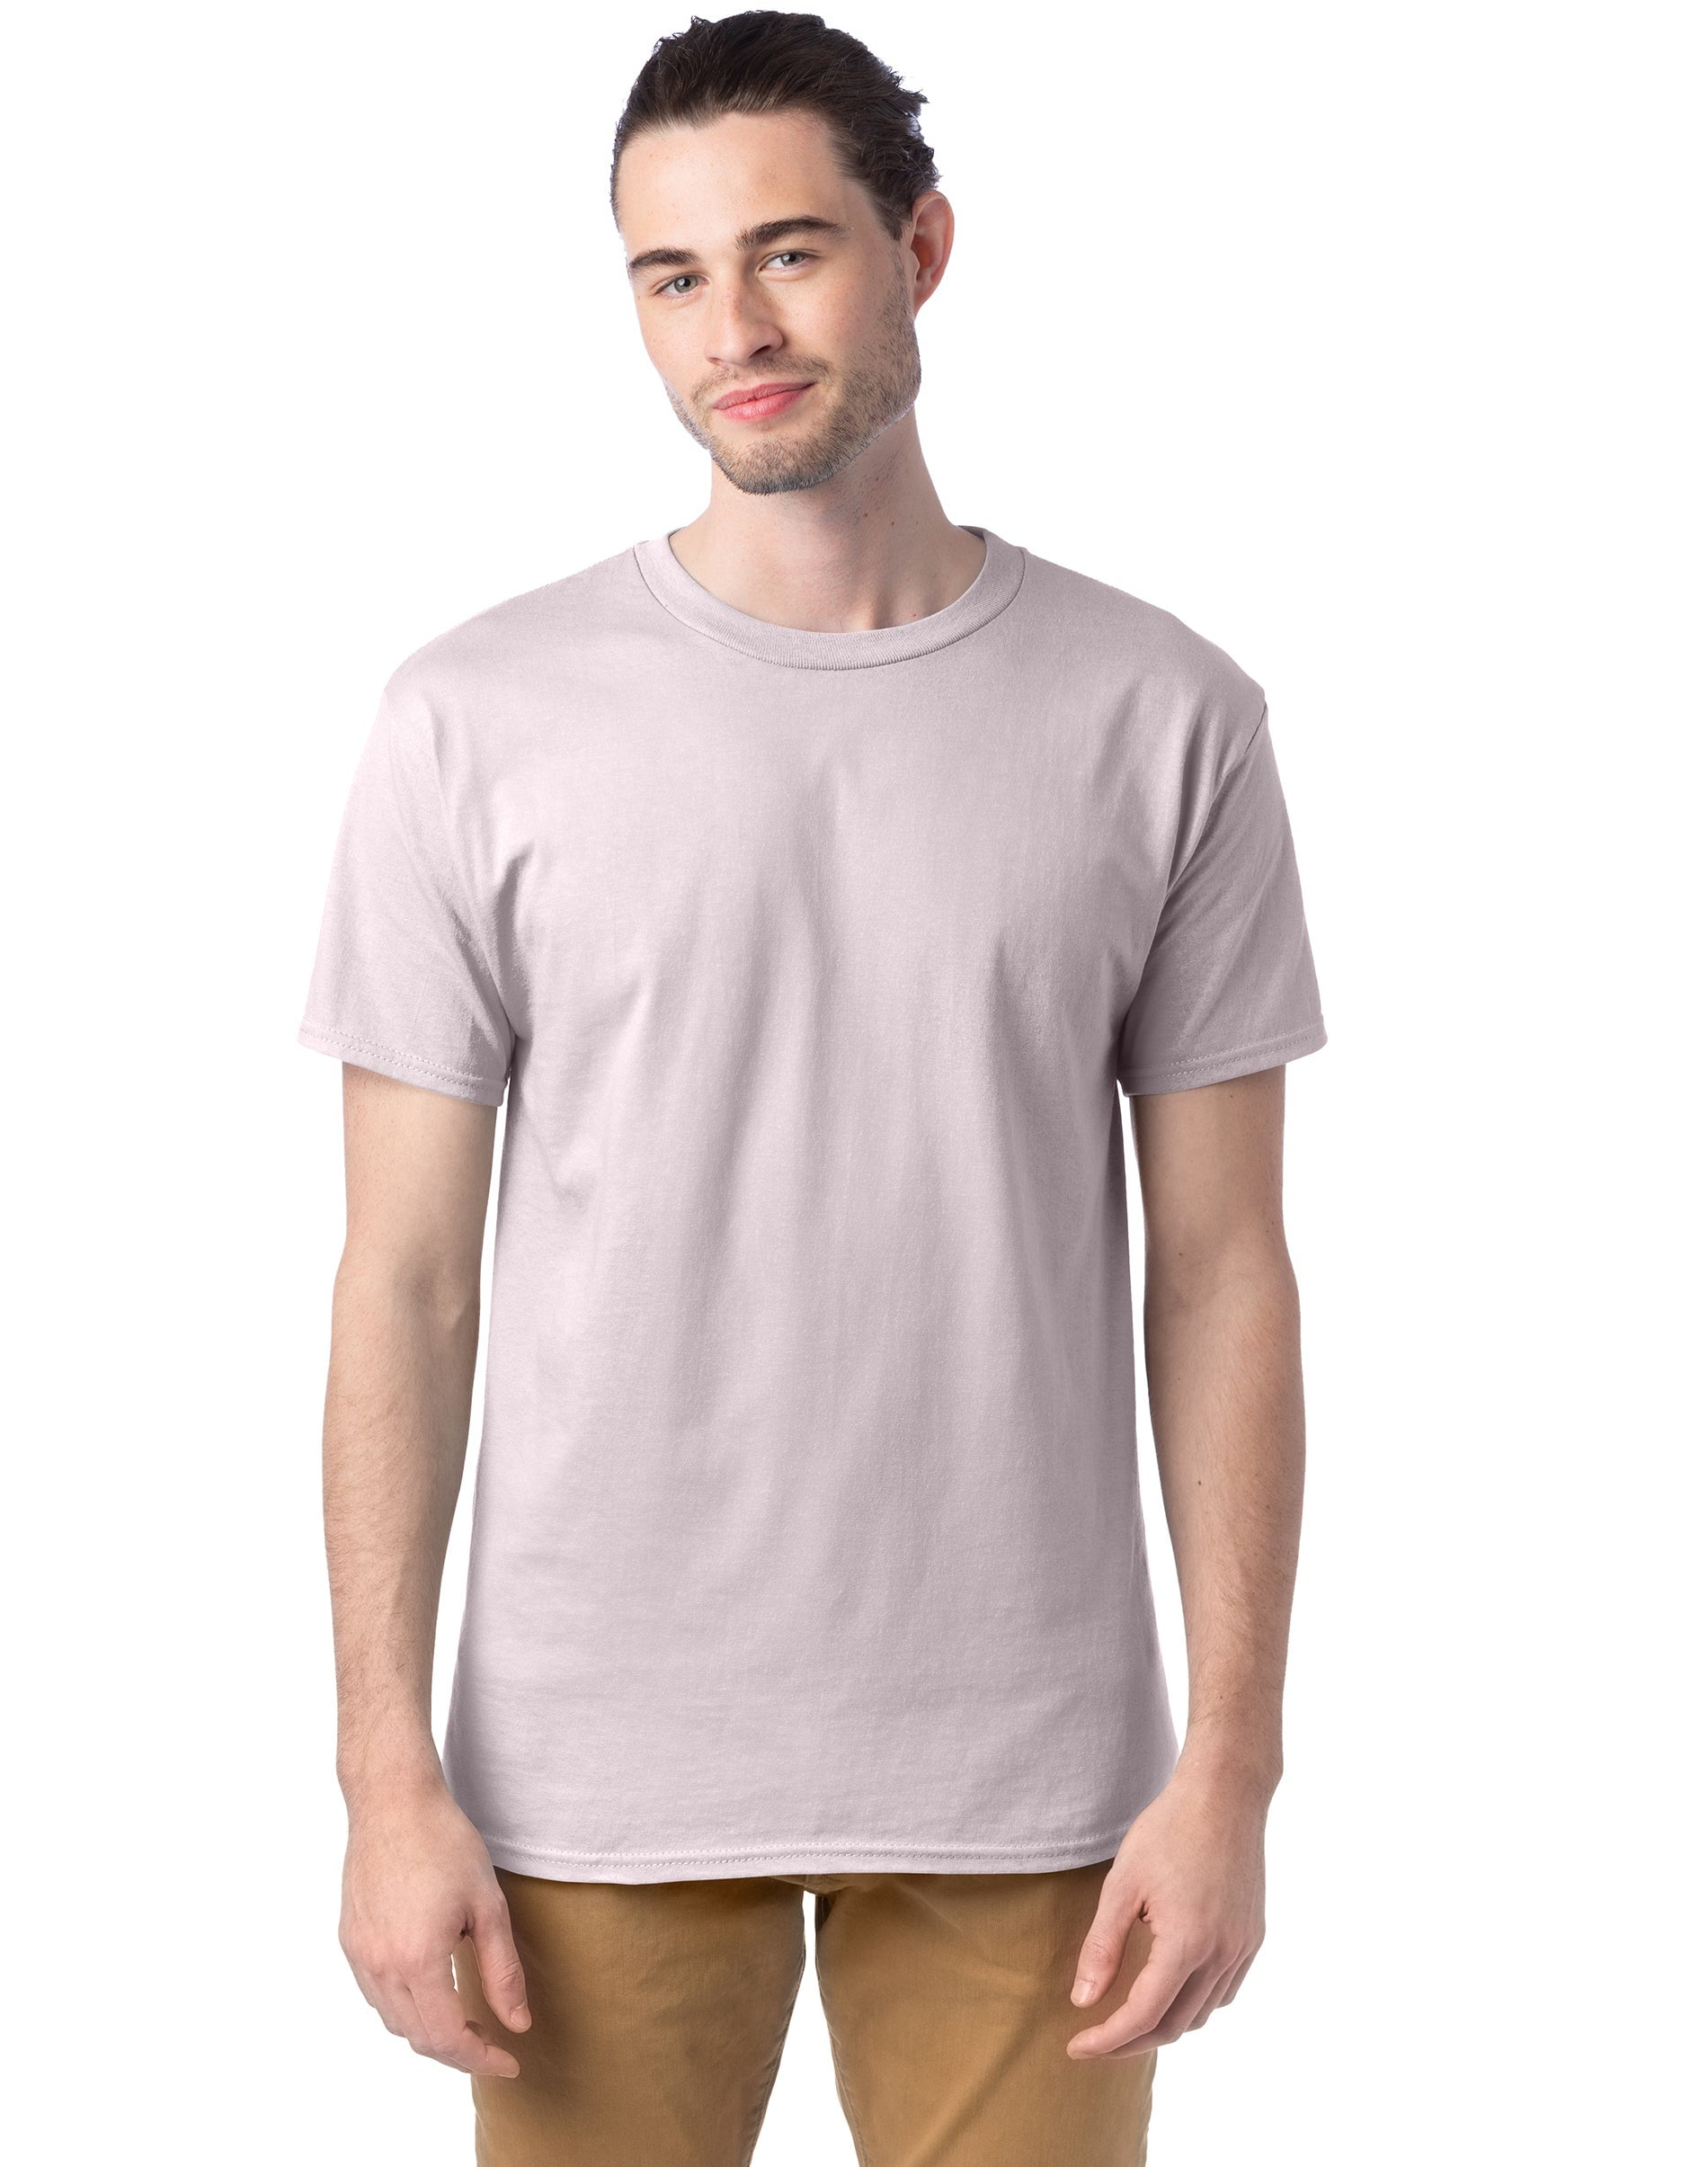 Hanes Essentials Men's T-Shirt, 4-Pack Sand 3XL Walmart.com